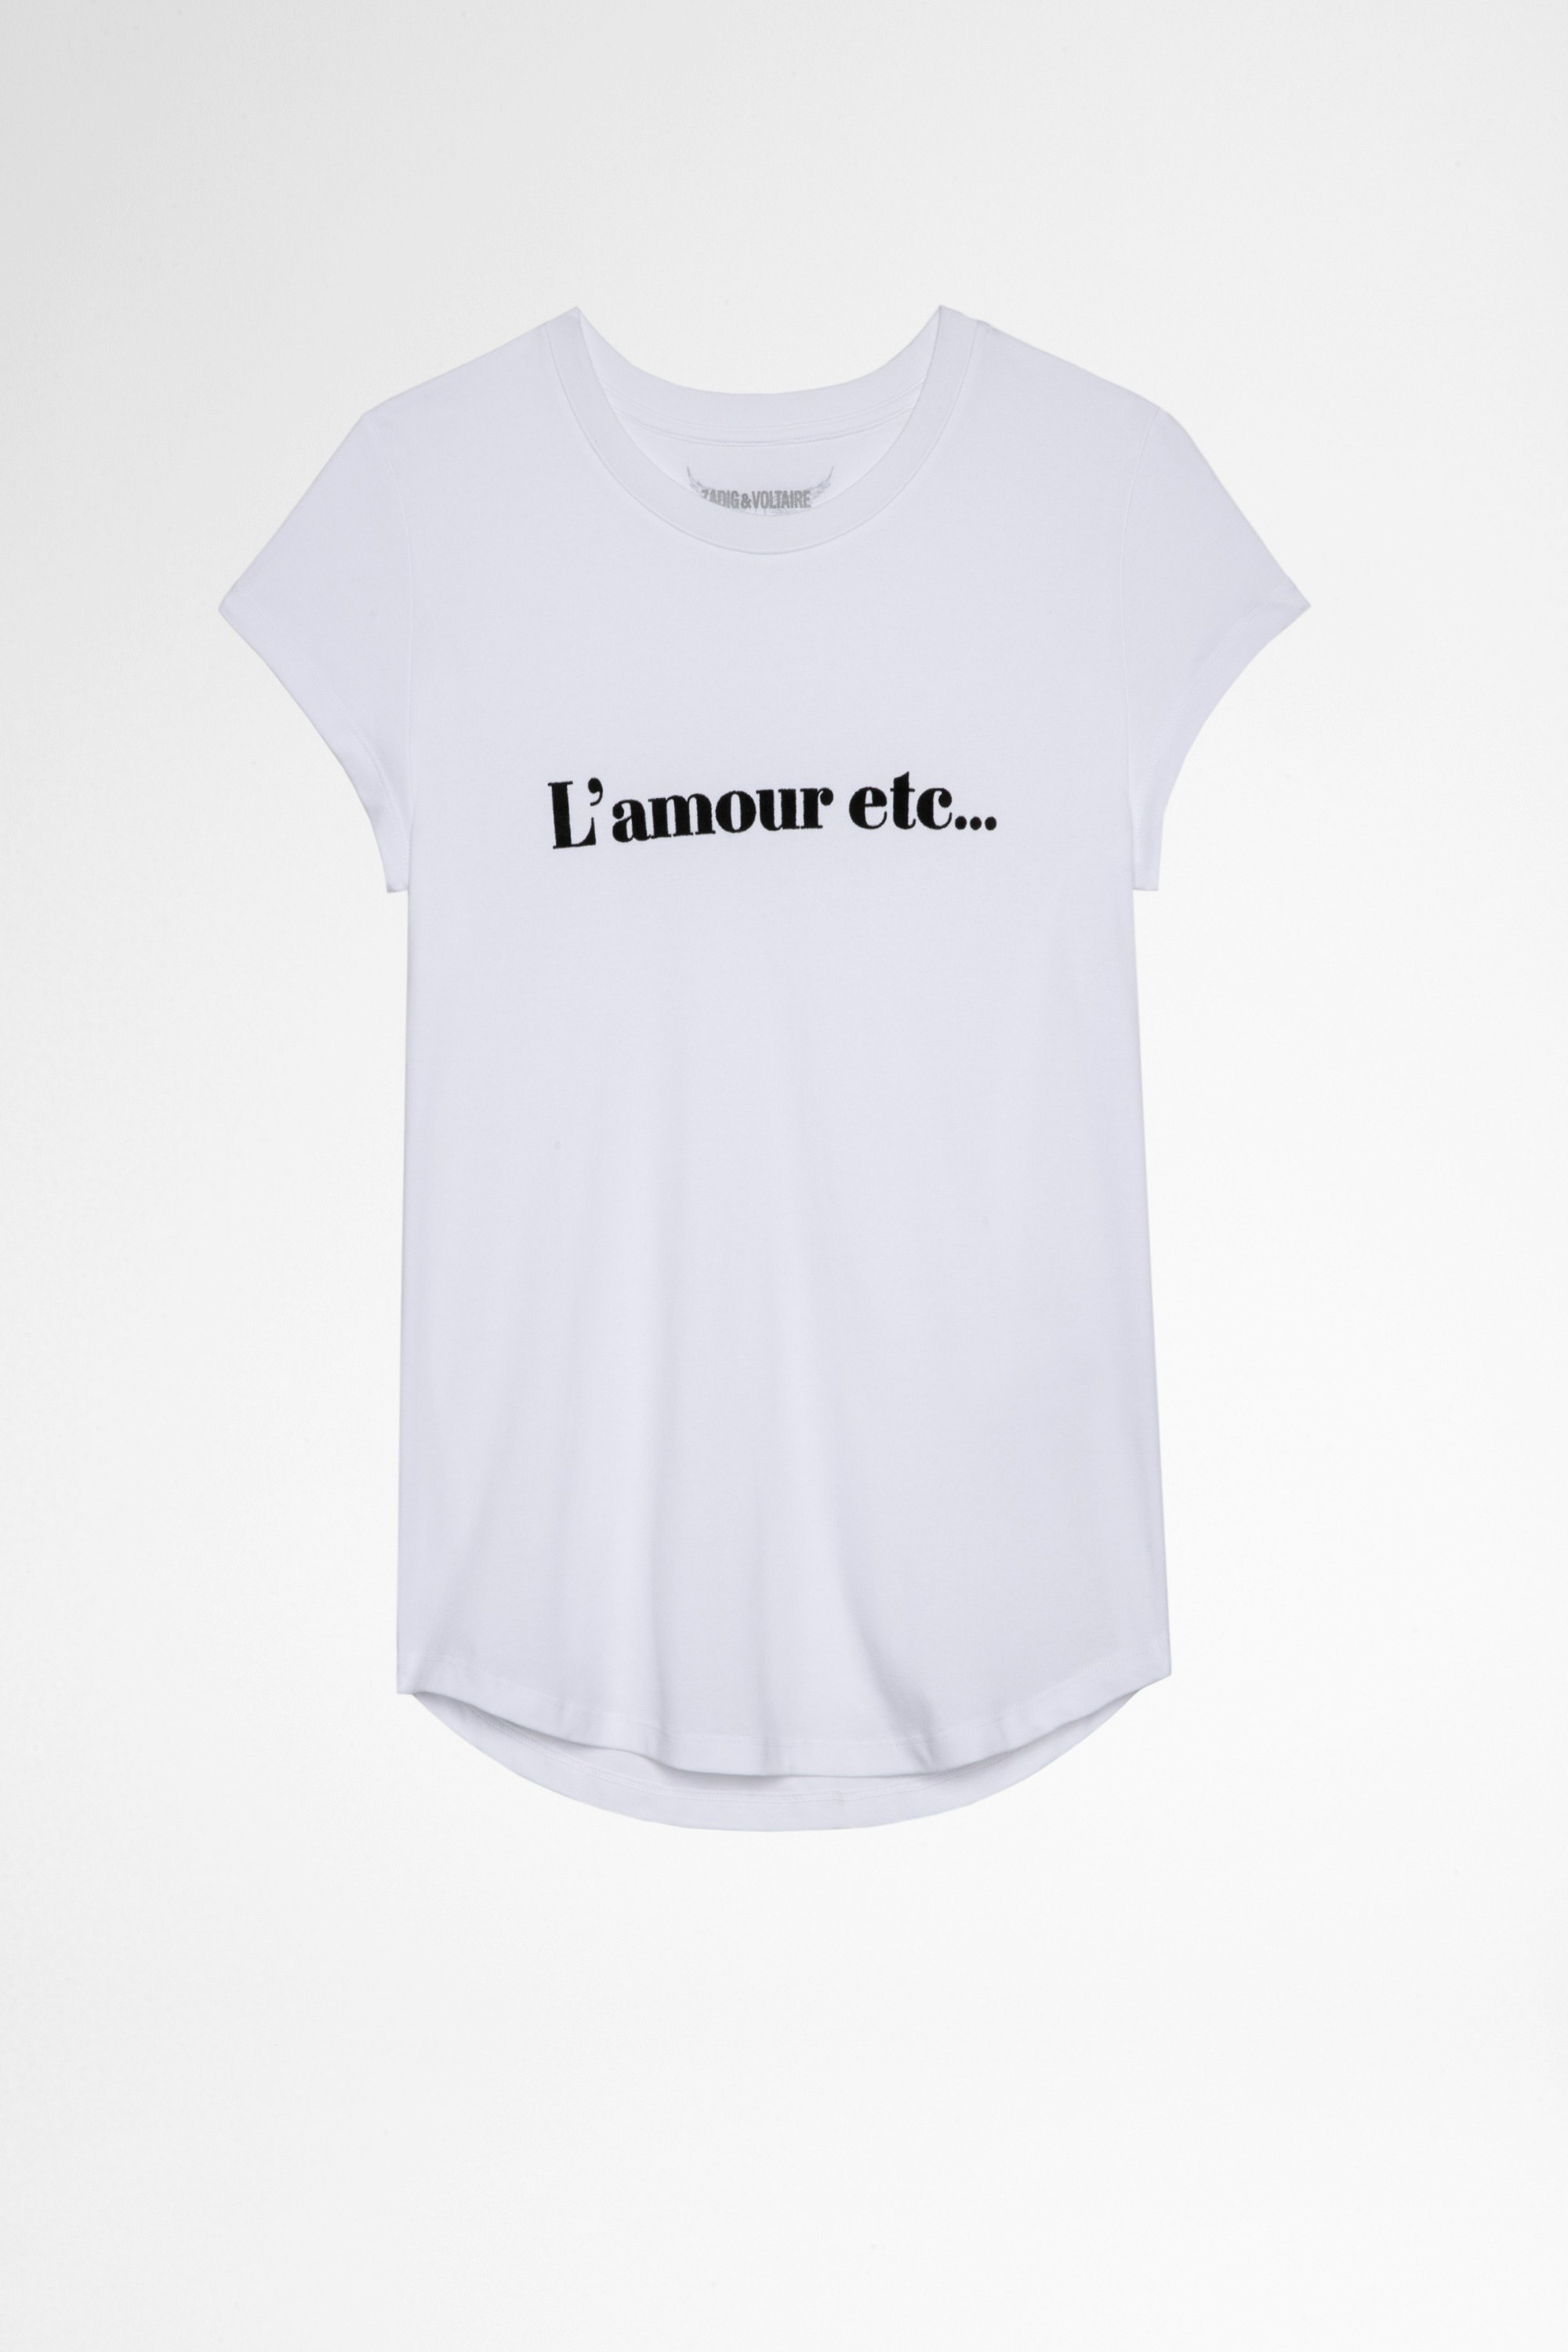 T-Shirt Woop L'Amour Etc T-shirt en coton blanc L'amour etc... Femme